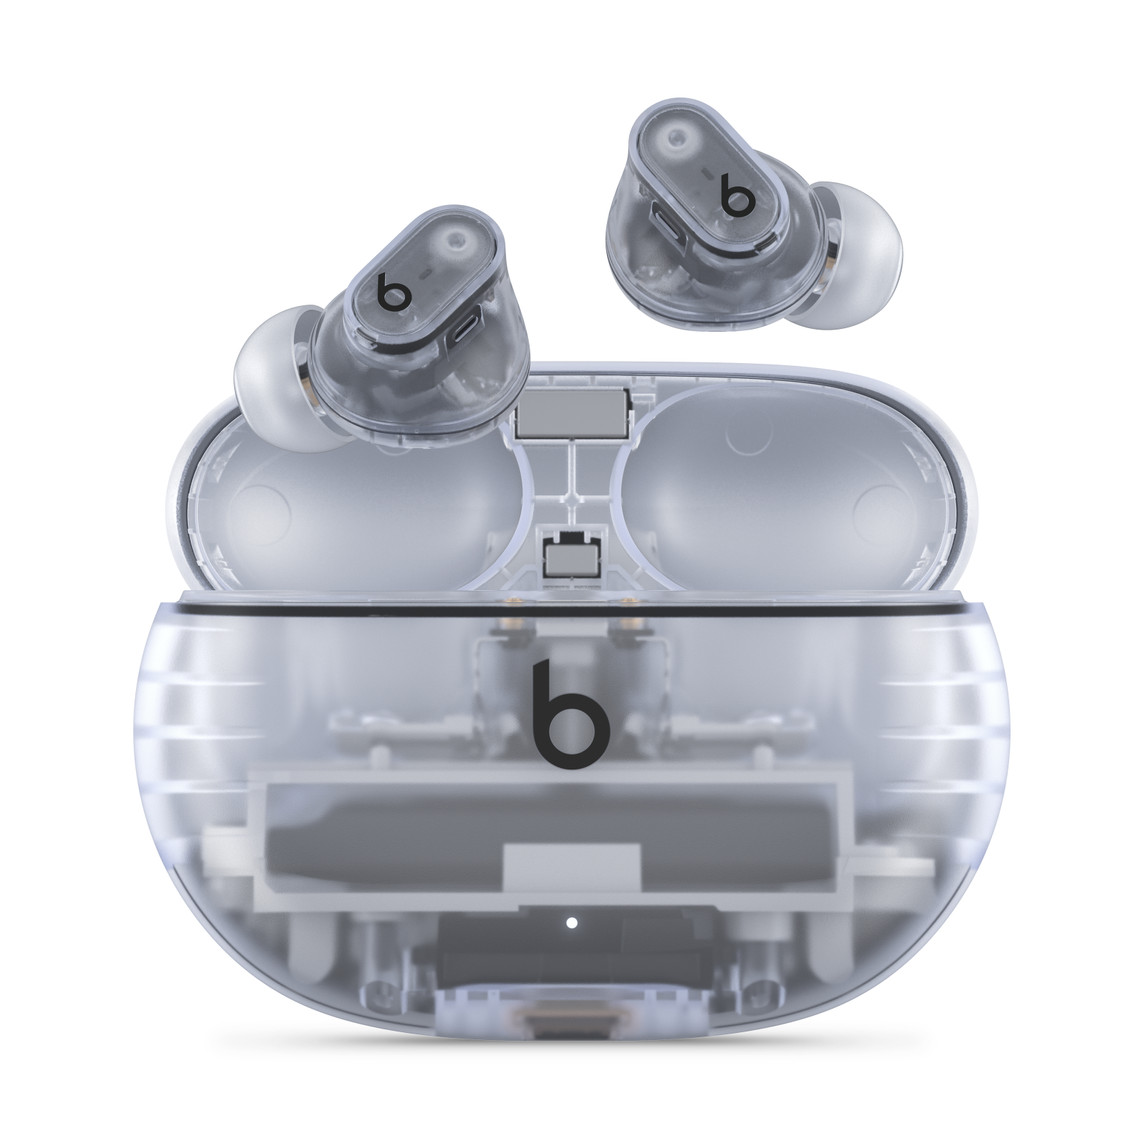 Prawdziwie bezprzewodowe słuchawki douszne z redukcją hałasu Beats Studio Buds + w kolorze przezroczystym z widocznym logo Beats i wygodnym etui ładującym.